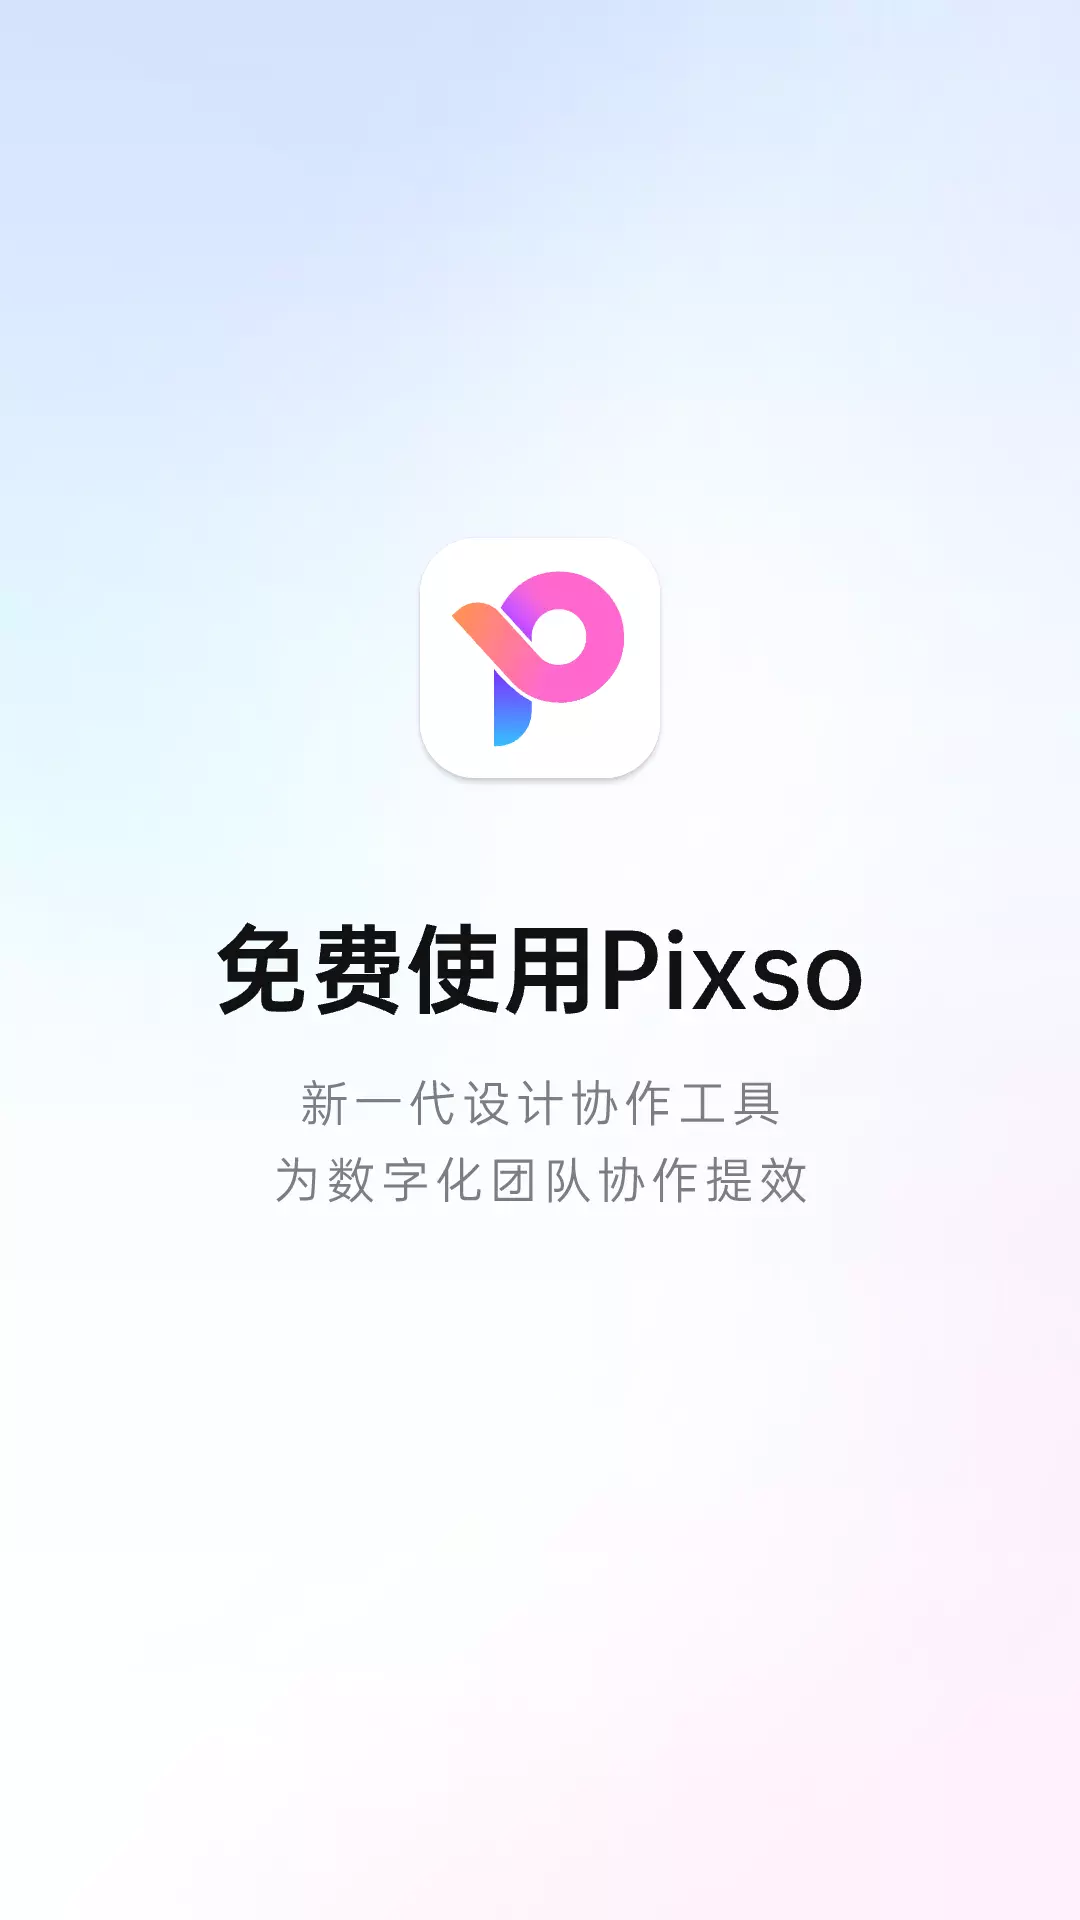 Pixso-协同设计v1.0.3-把产品设计得更美好截图1